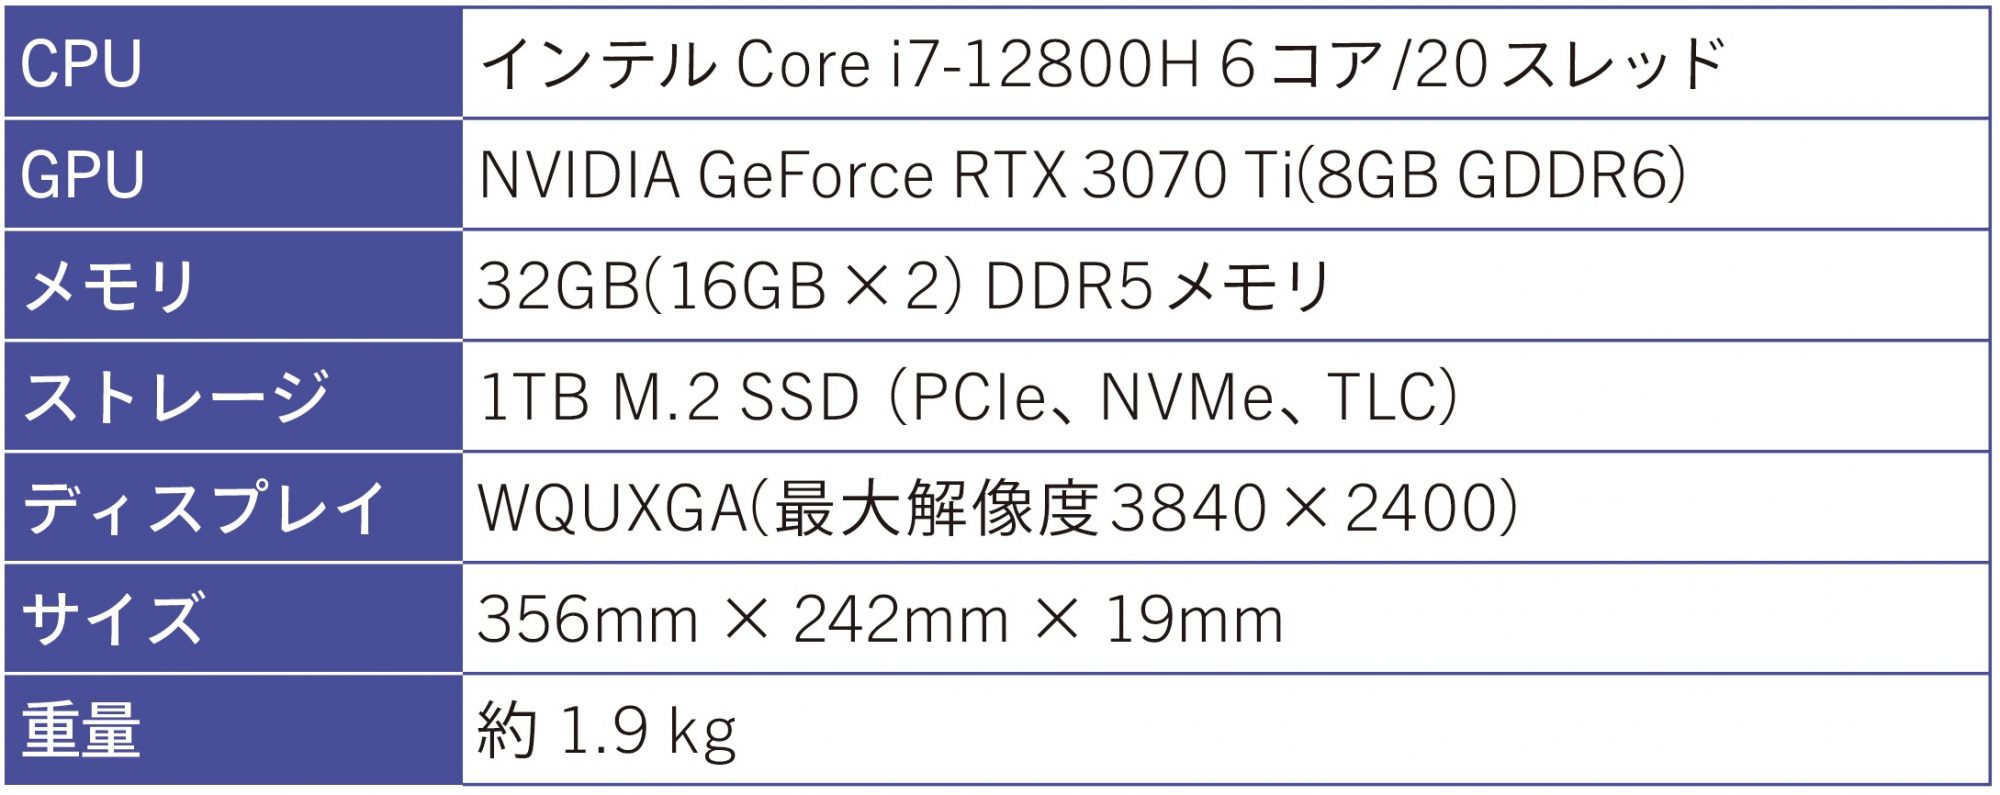 ✨限定/爆速SSD256GB/DVD焼き /8GB/動画編集✨ノートパソコン